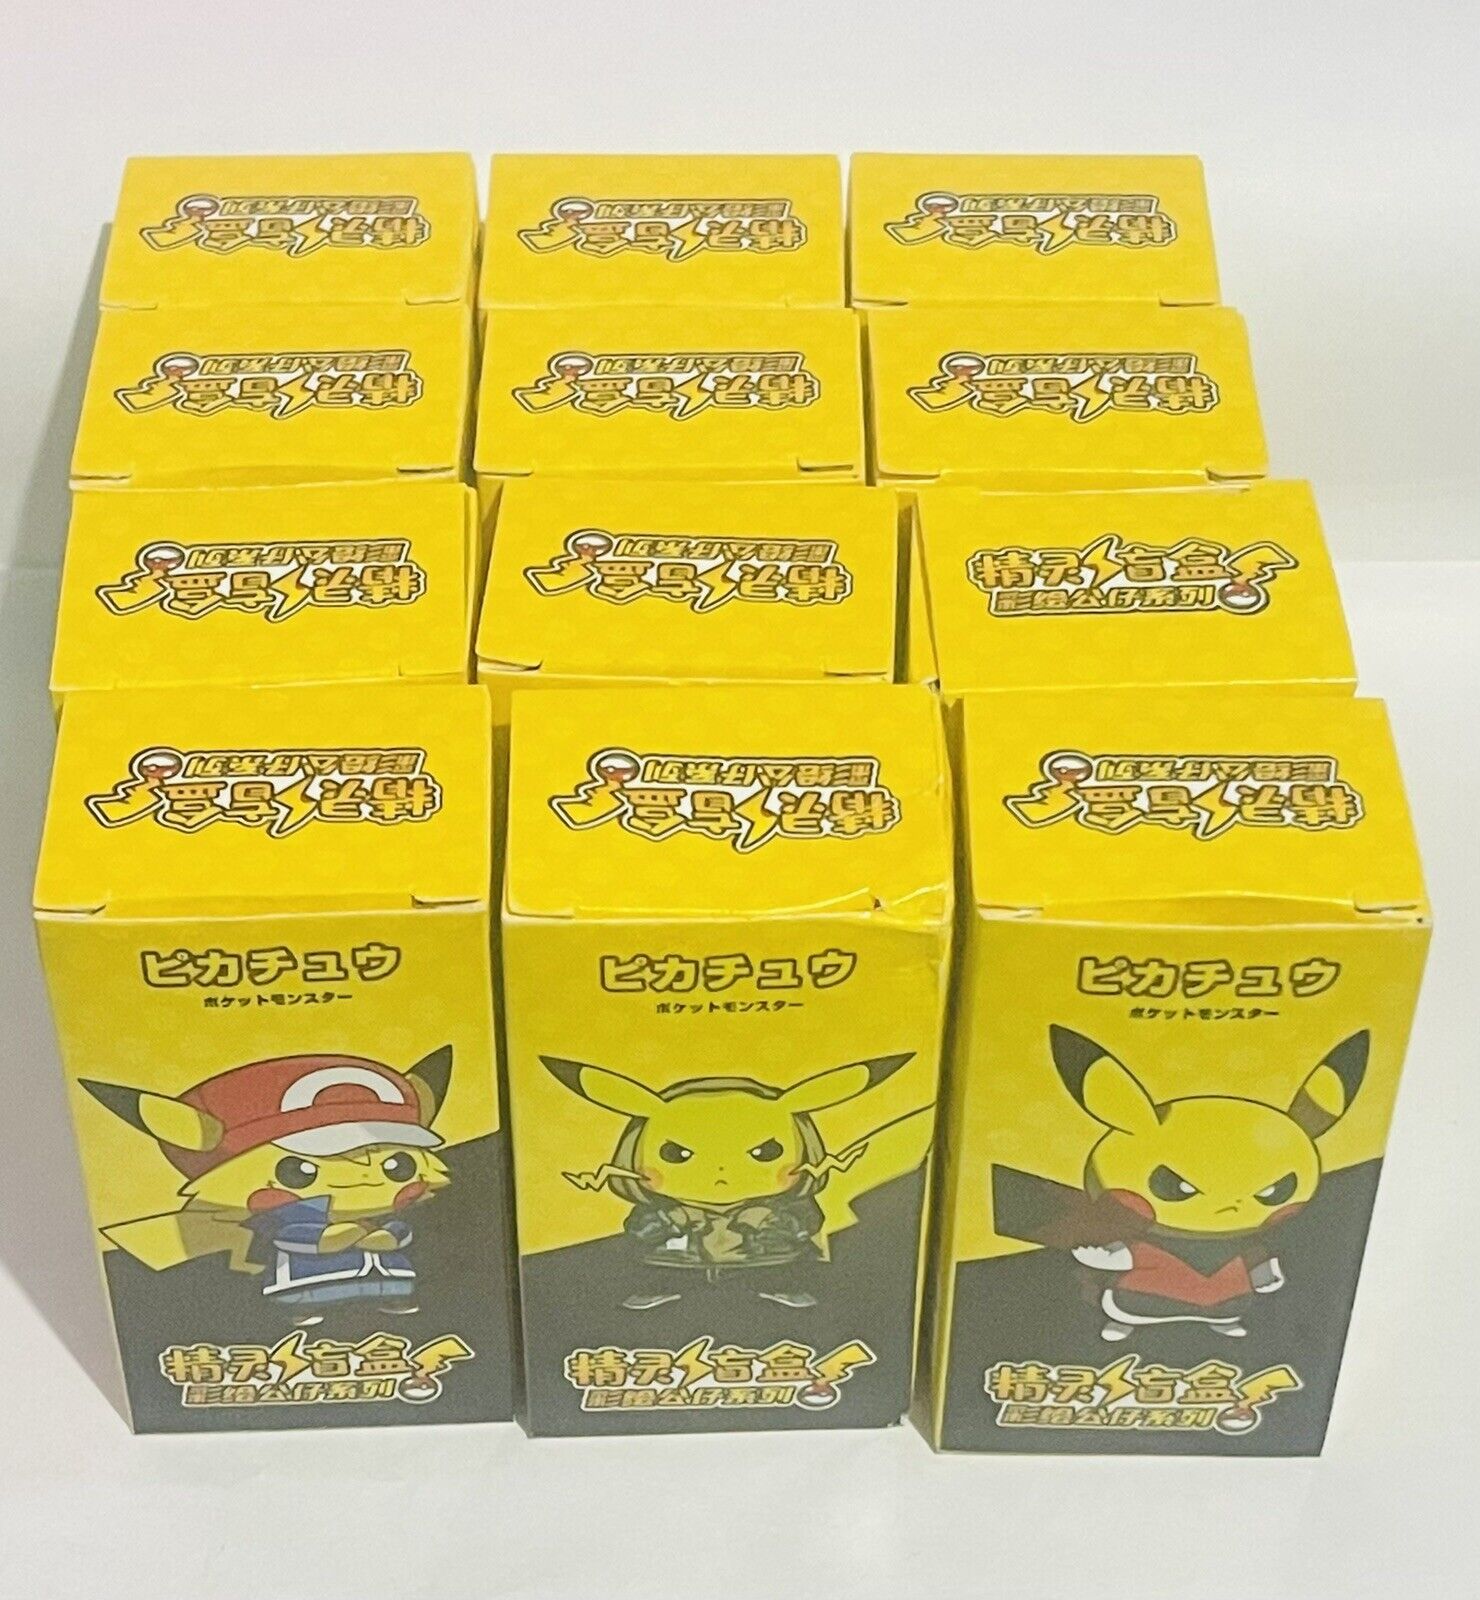 Pokémon Anime Keychain 12 Pk Mixed - Random Keychains Bulk | Pikachu